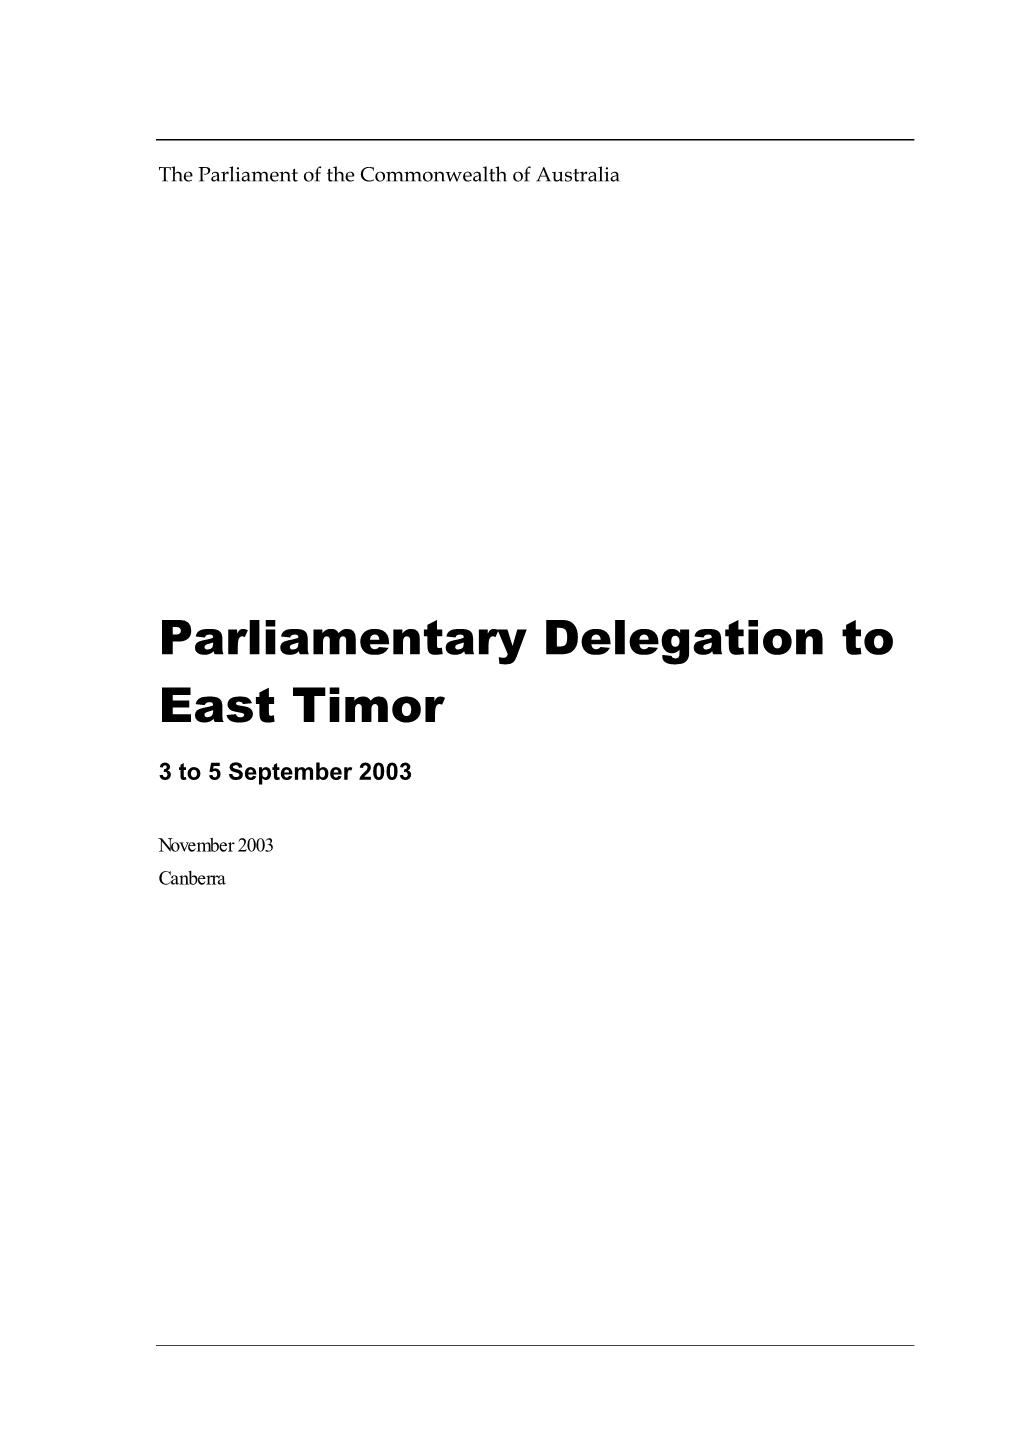 East Timor Delegation Report